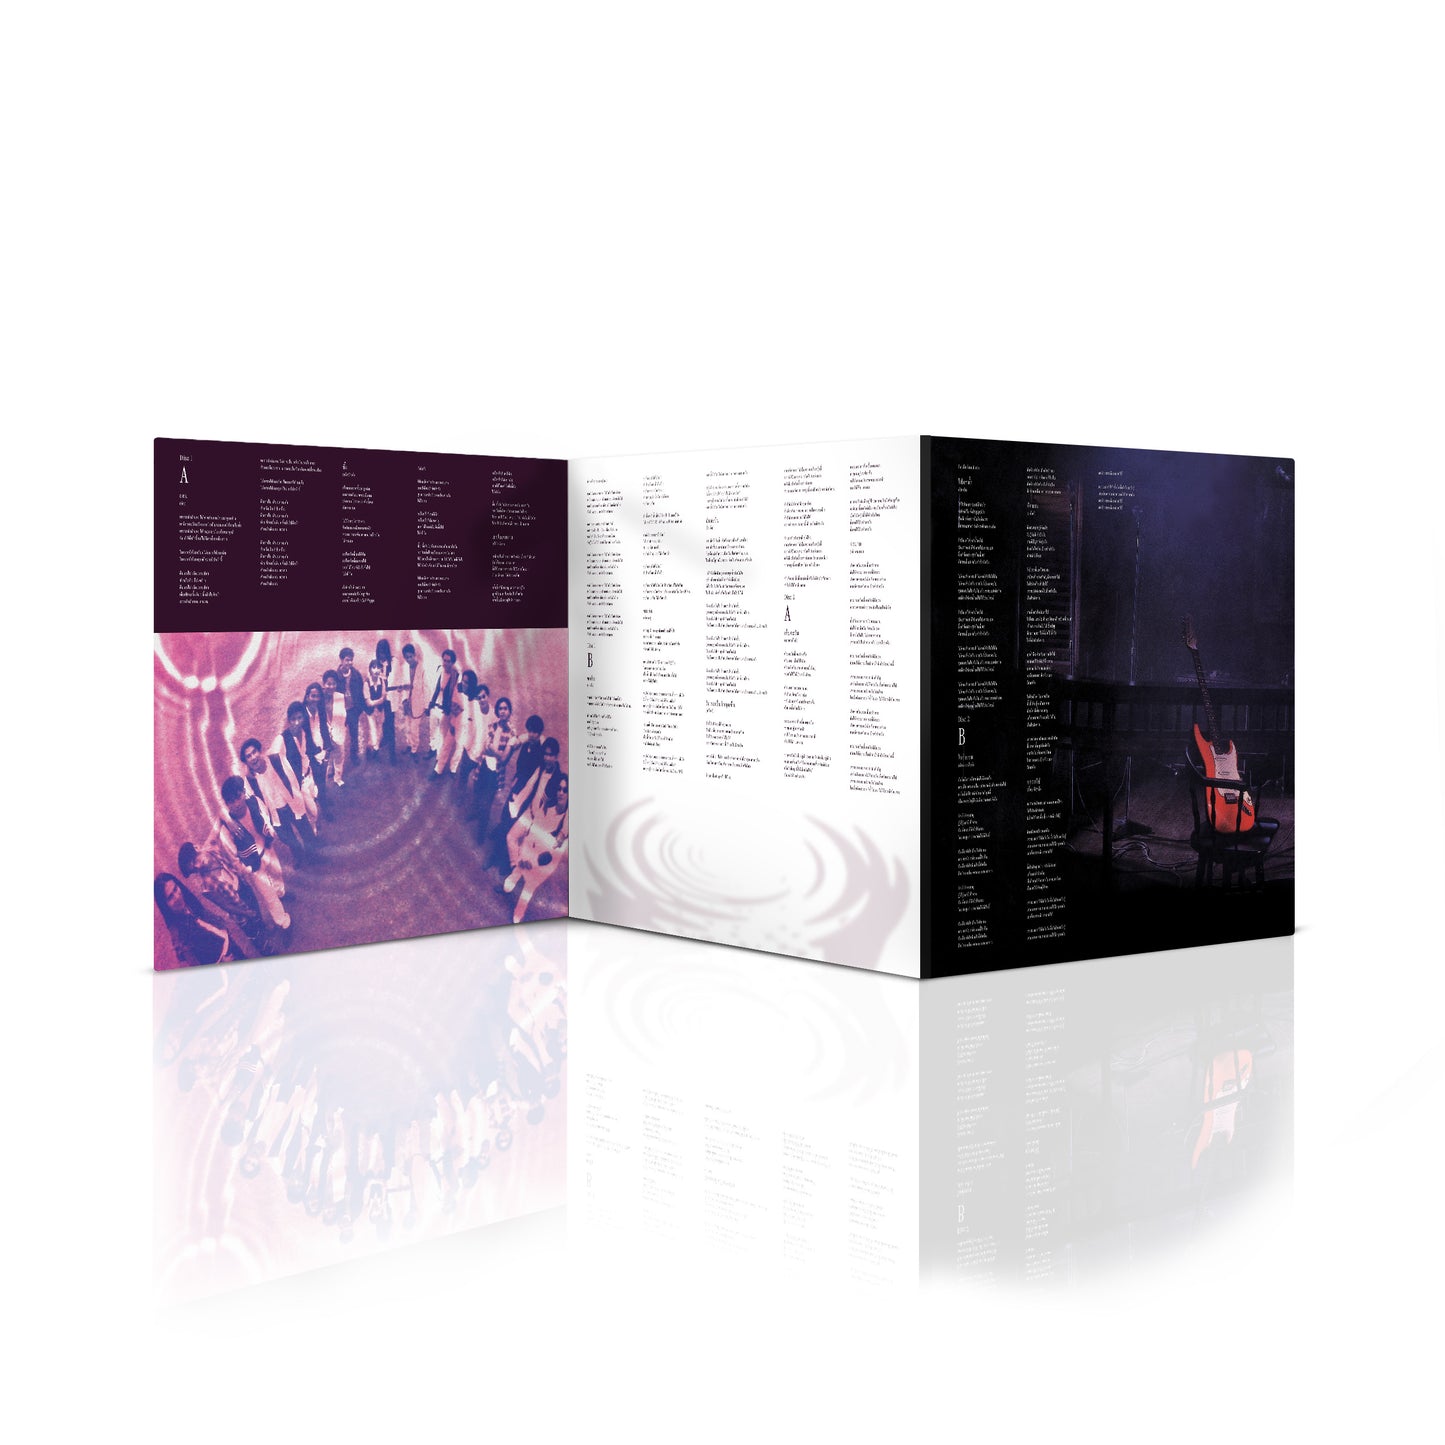 แผ่นเสียง RS Unplugged ดนตรีนอกเวลา 30th Anniversary 2-LP Complete Edition (45RPM)